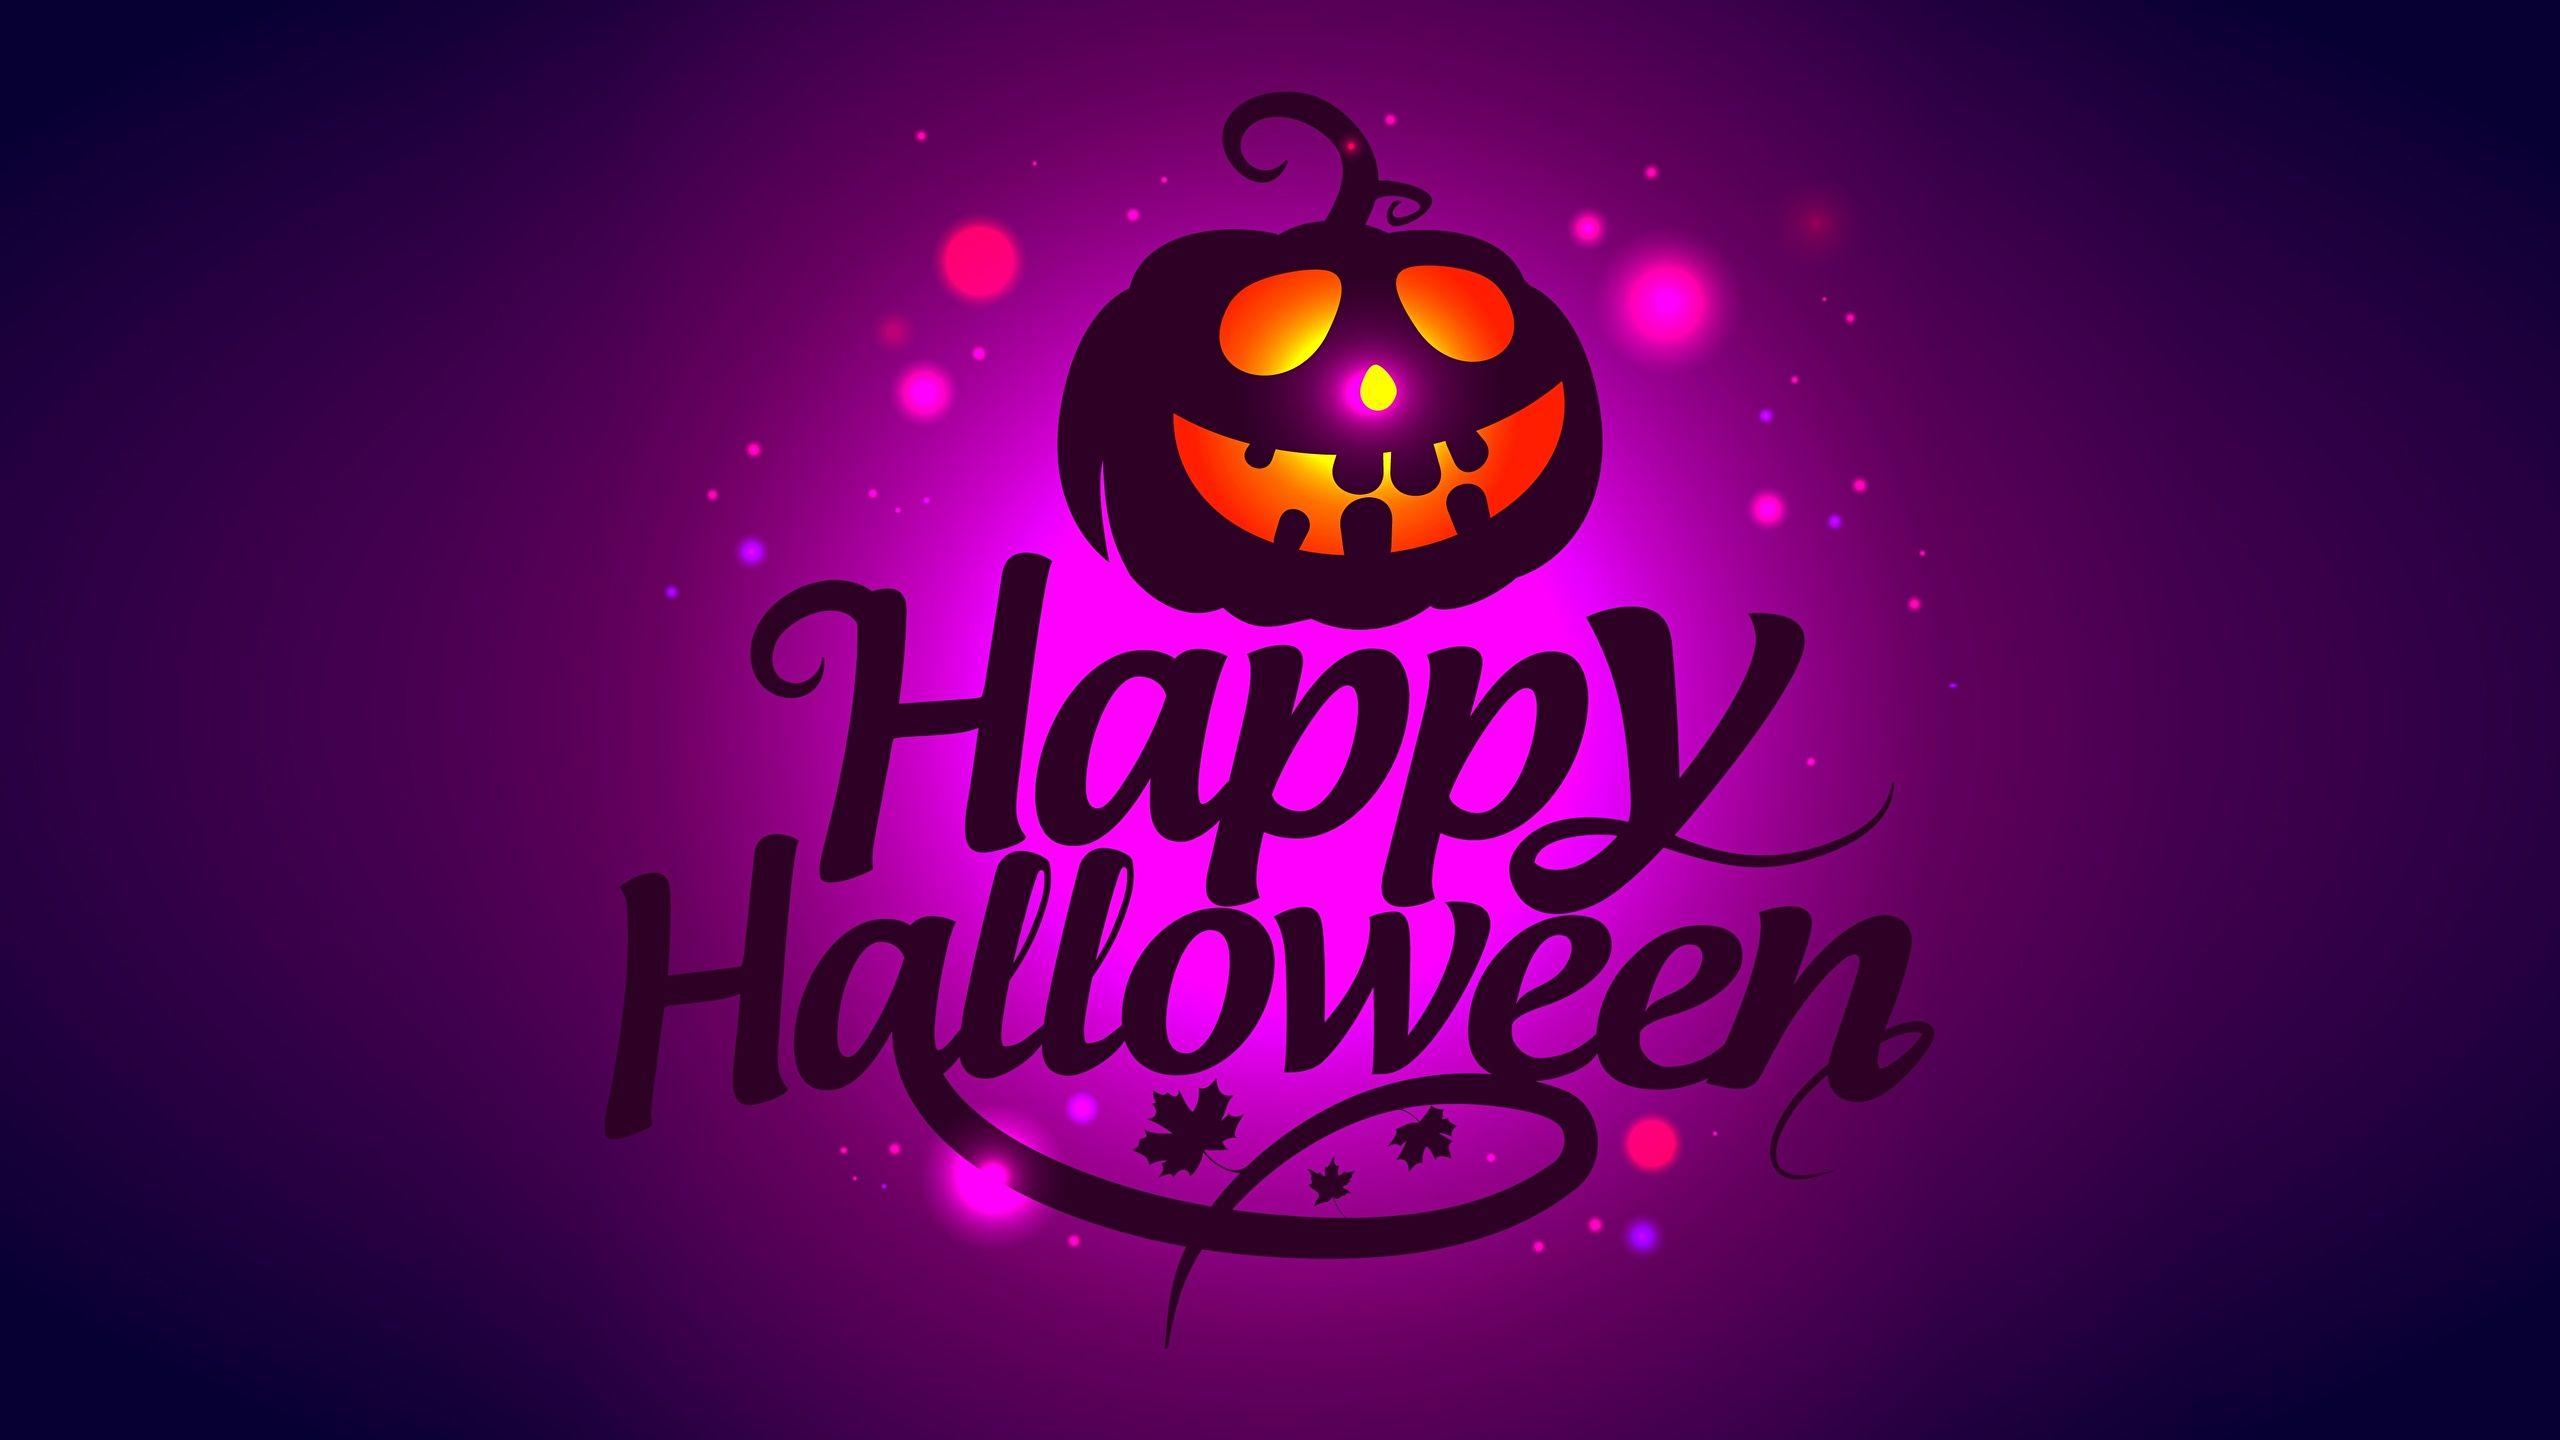 Purple Halloween Pumpkin Wallpapers - Top Free Purple Halloween Pumpkin